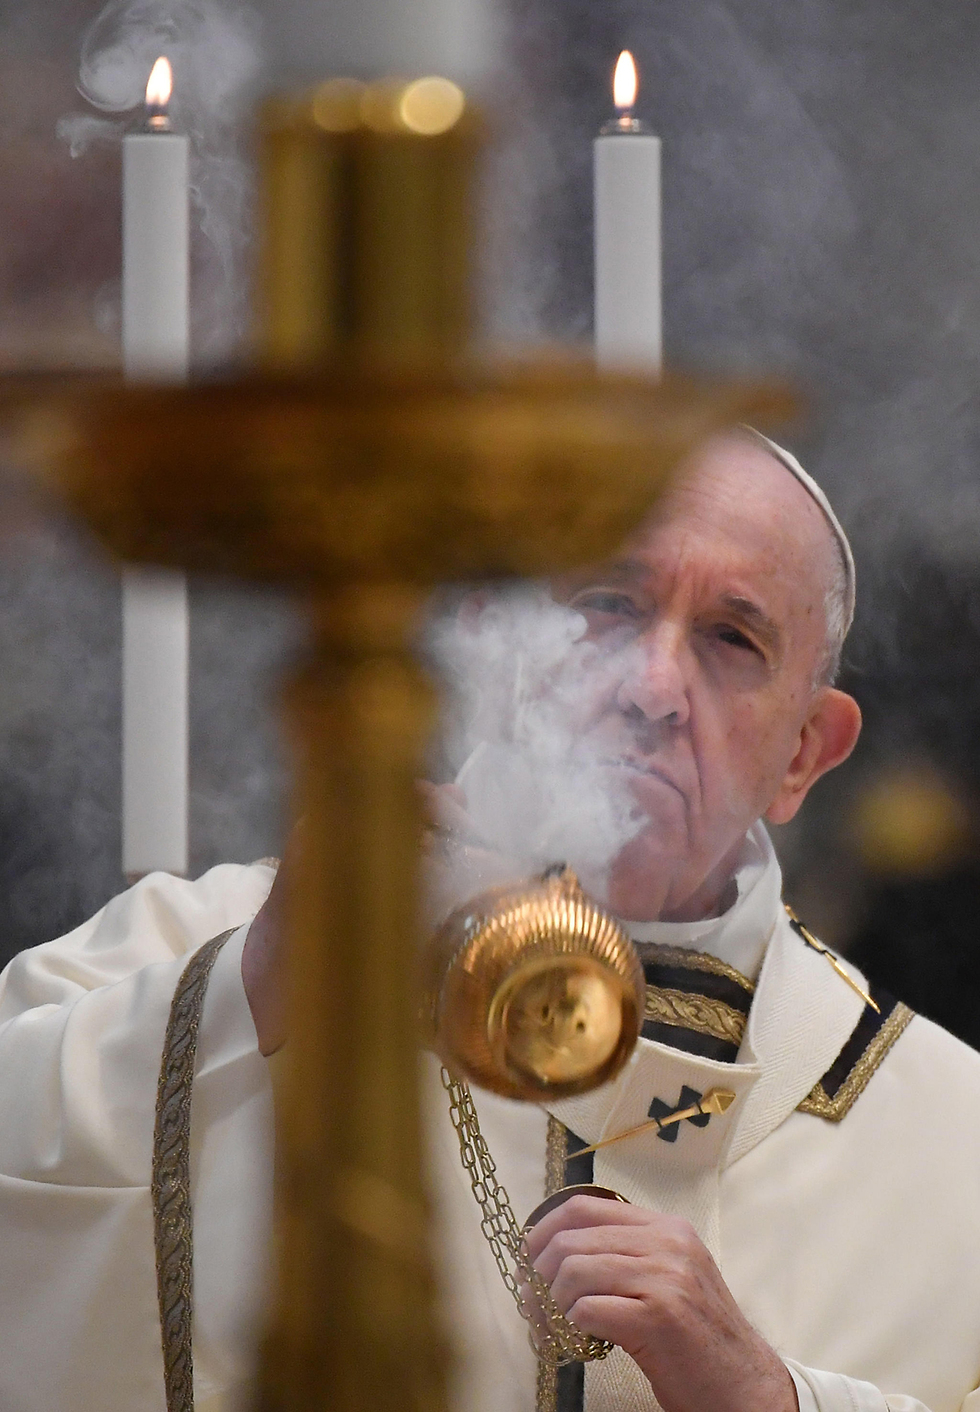 האפיפיור אפיפיור פרנסיסקוס בזיליקת פטרוס הקדוש חג הפסחא פסחא (צילום: EPA)